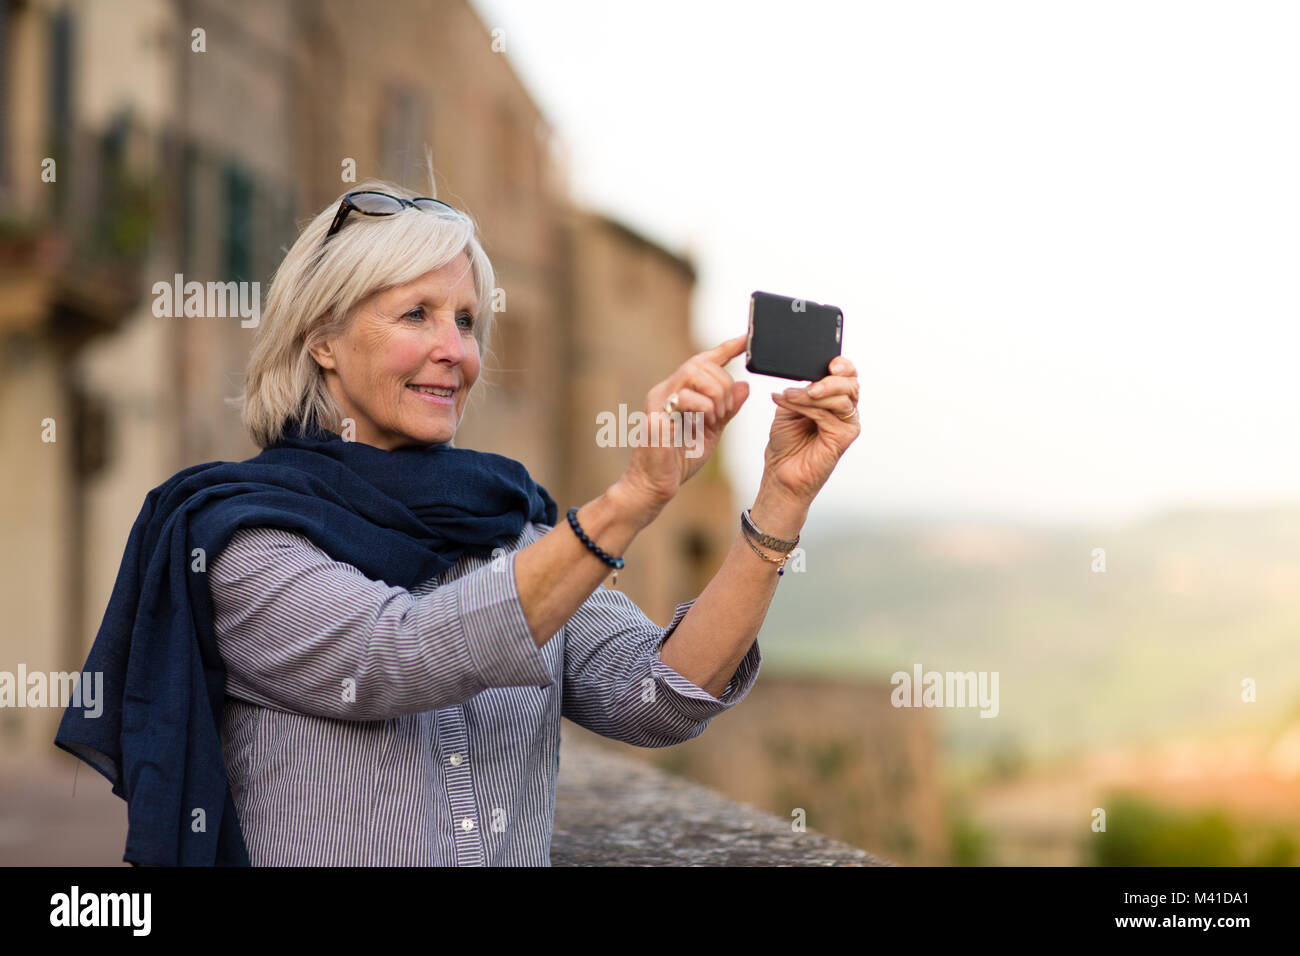 Senior woman en vacances en prenant une photo Banque D'Images